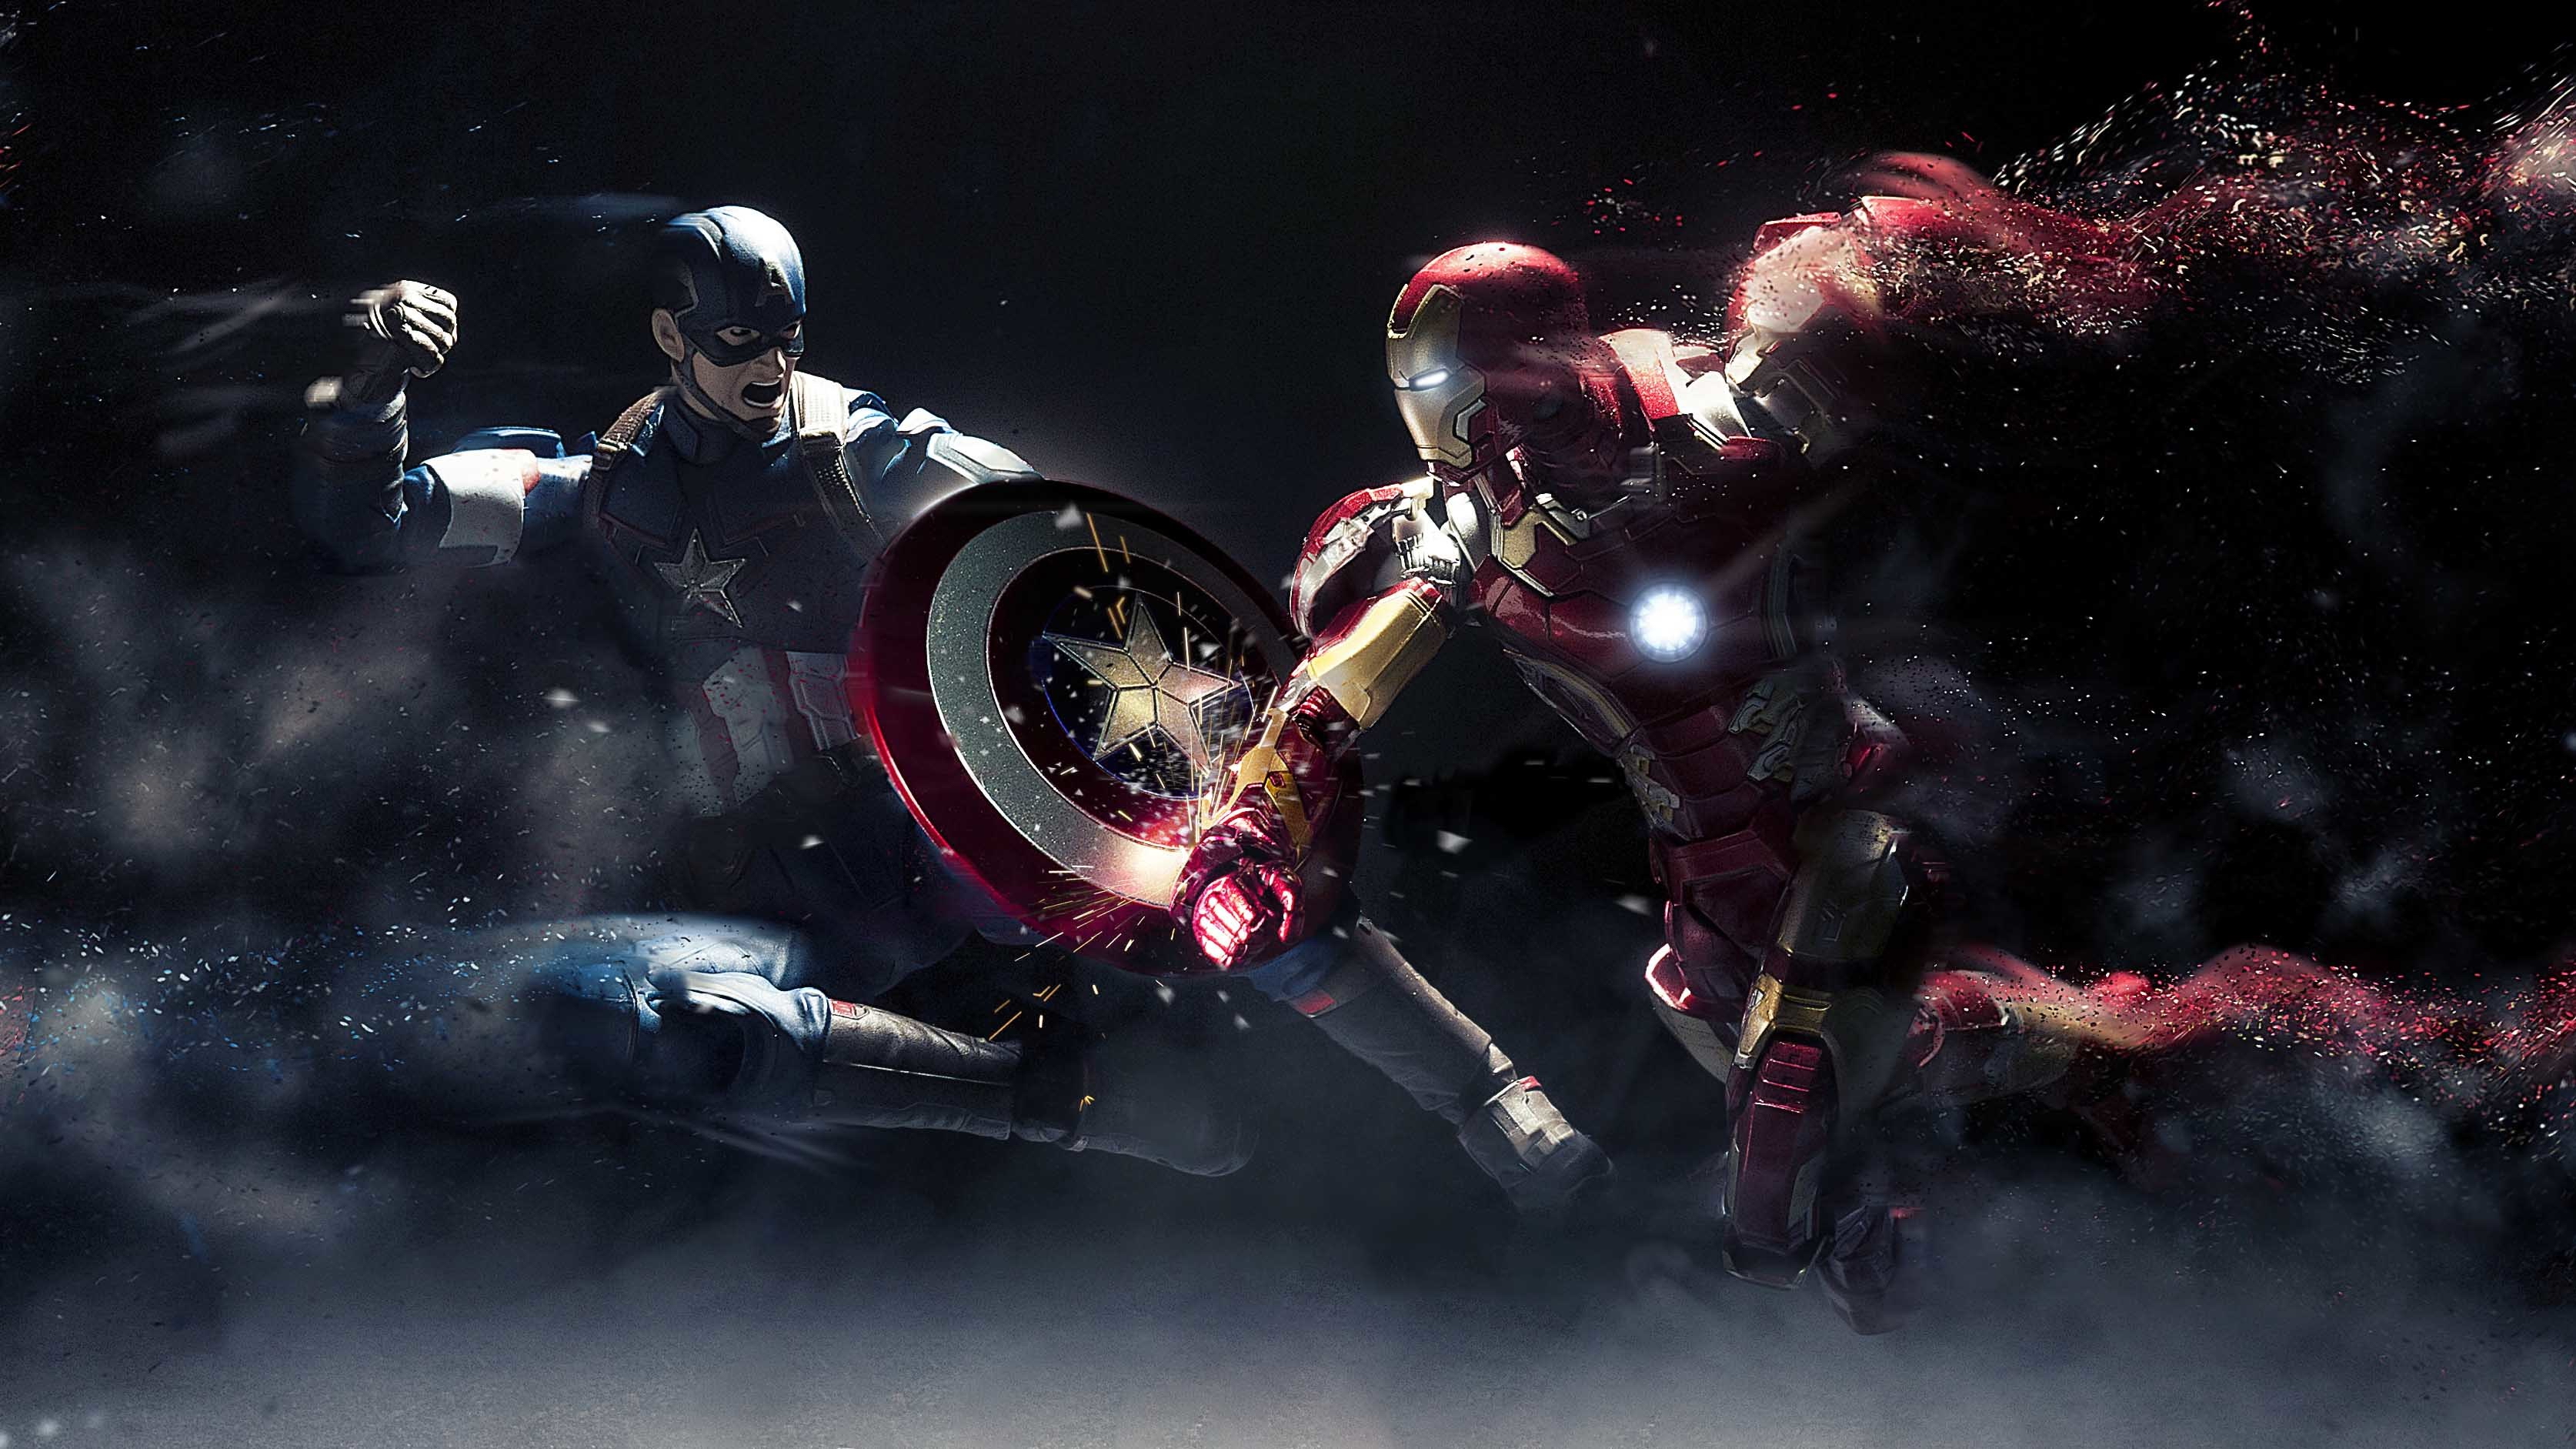 4 9 1024. Железный человек против капитана Америке. Железный человек против капитана. Железный человек vs Капитан Америка. Обои Капитан Америка и Железный человек.